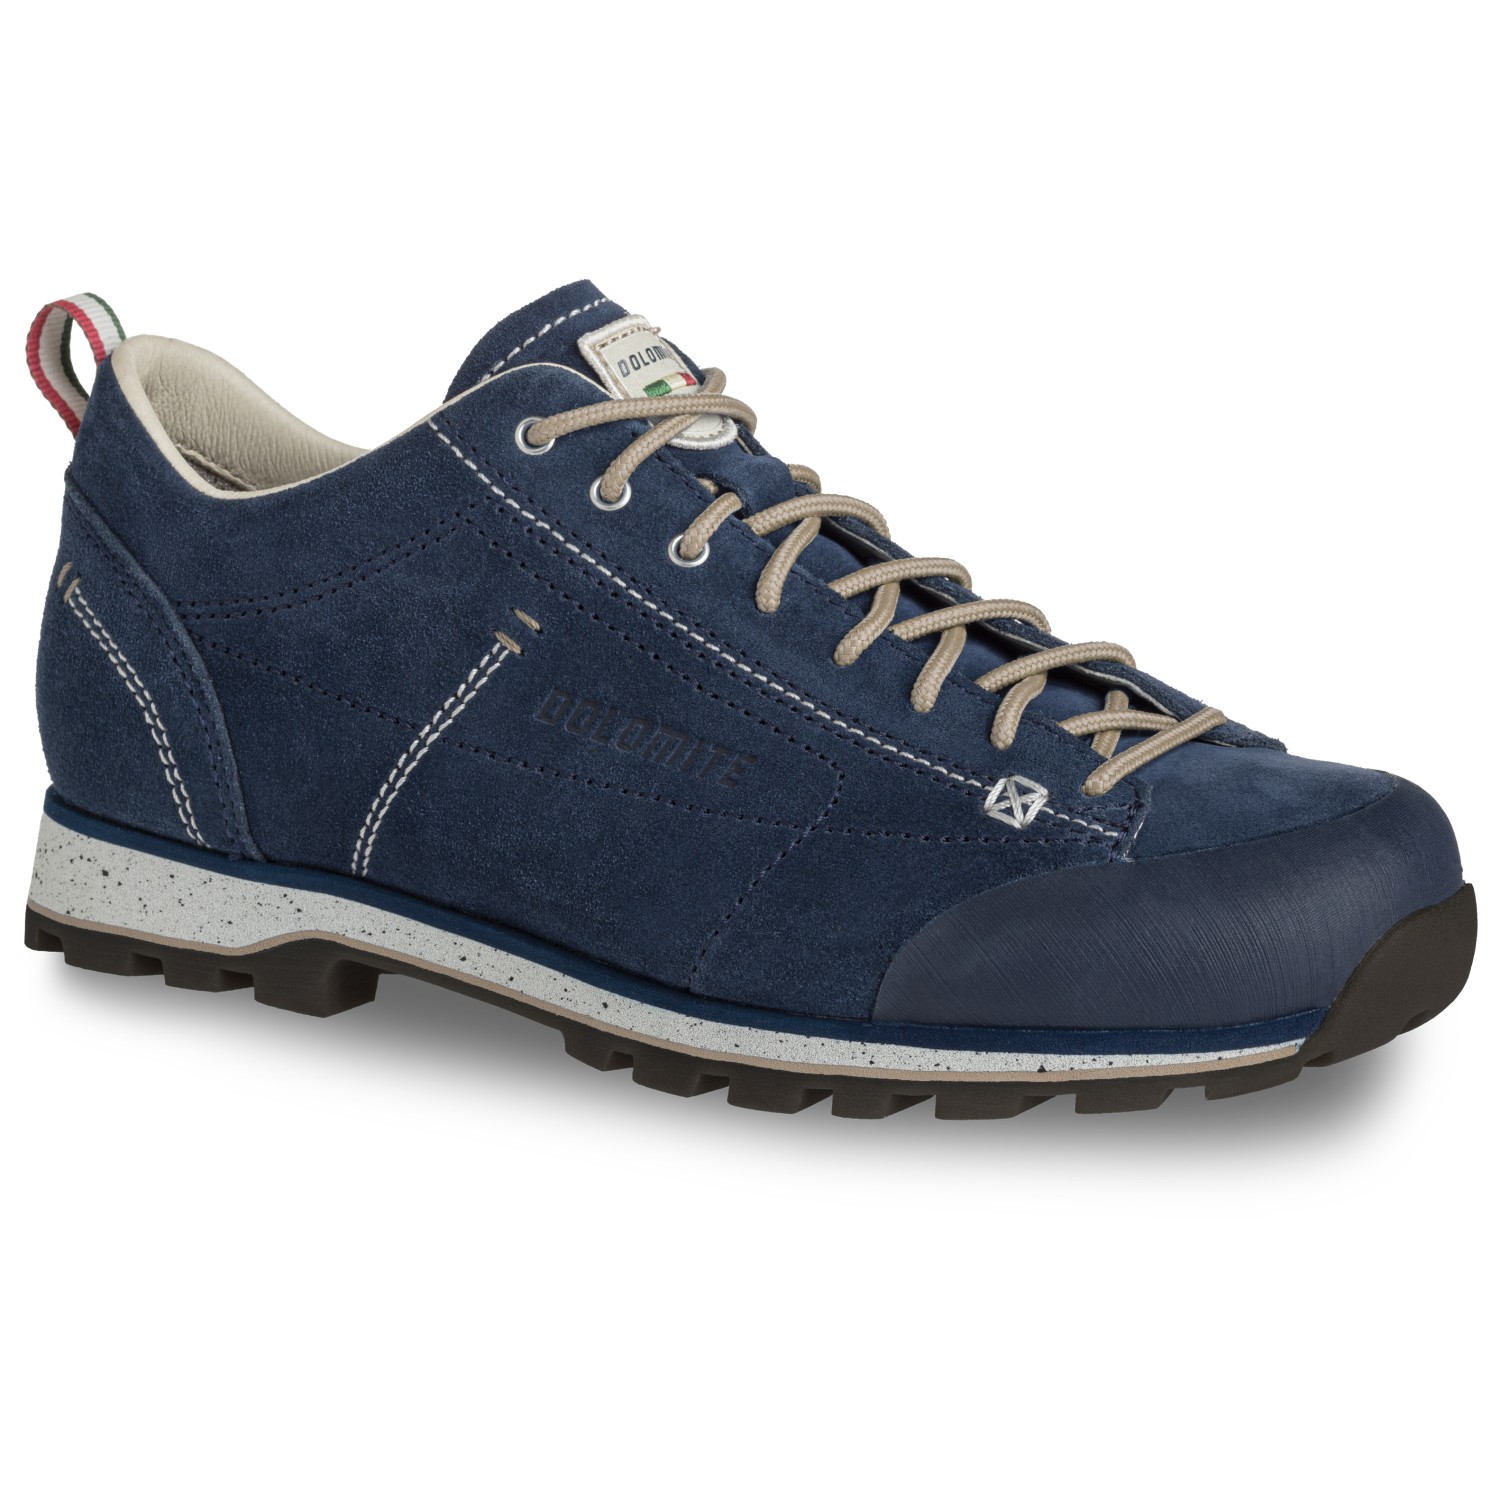 Повседневная обувь Dolomite 54 Low Evo, синий повседневная обувь dolomite cinquantaquattro low full grain leather evo gtx цвет storm grey